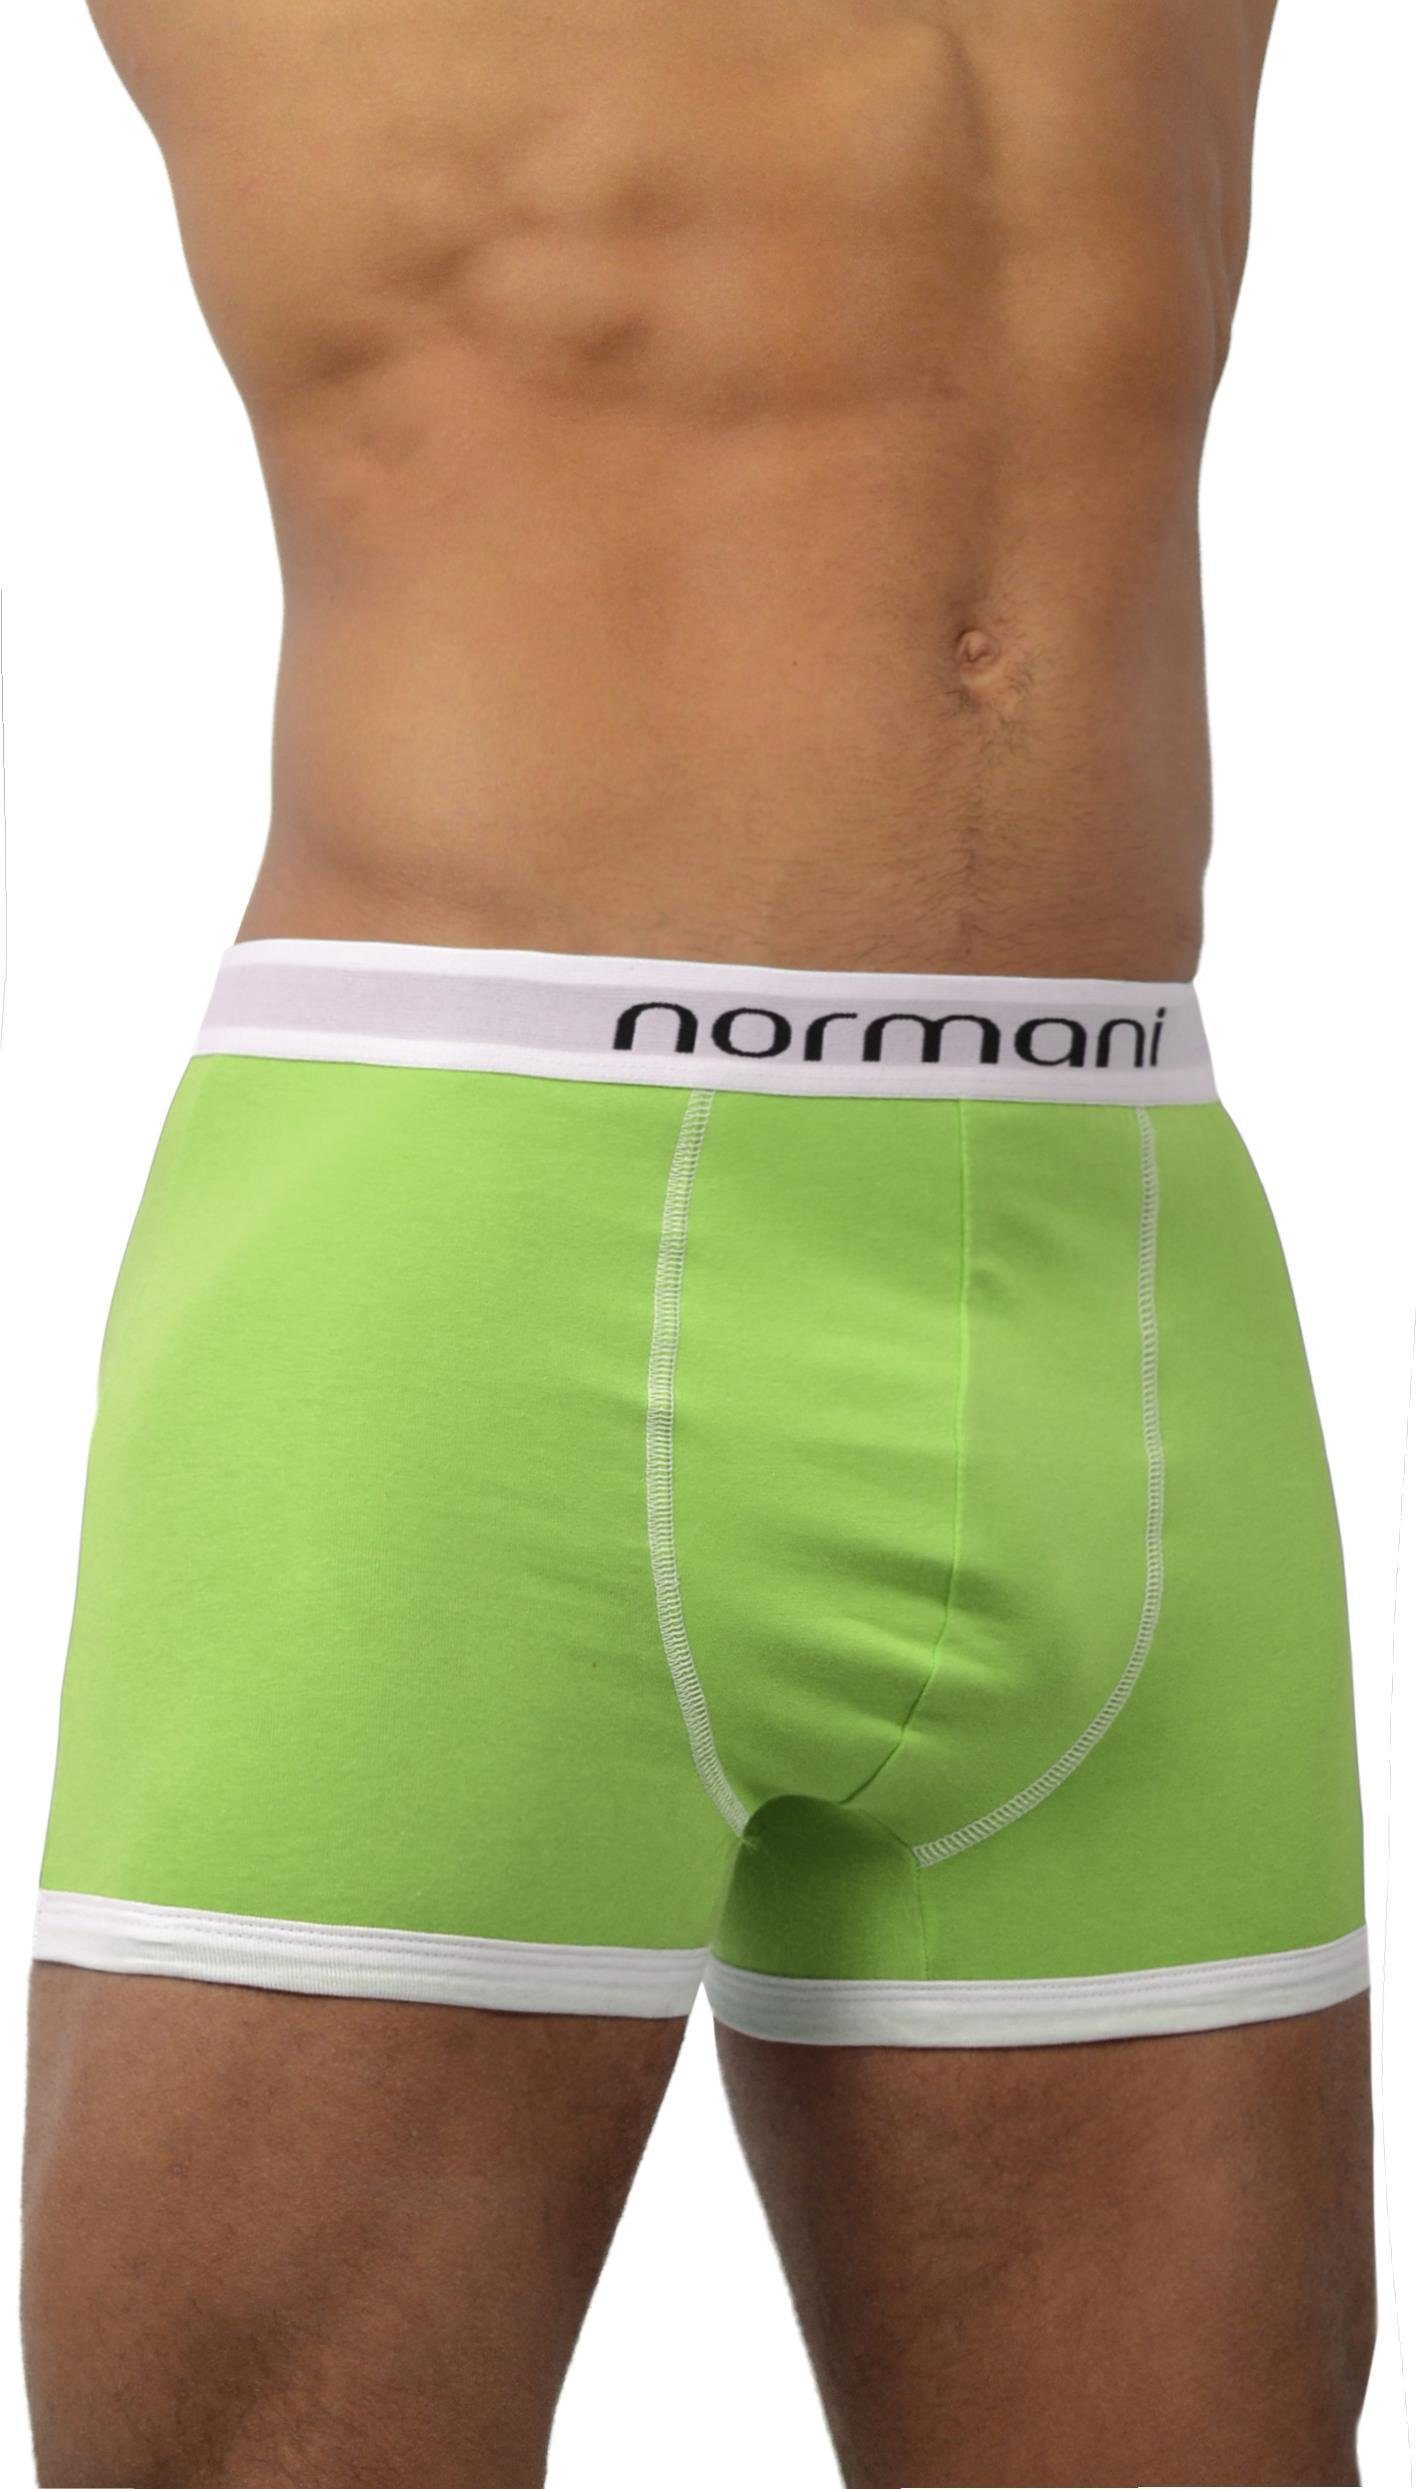 normani Retro Boxer 6 aus Retro Boxershorts aus Grün atmungsaktiver Unterhose Baumwolle Stück Baumwolle Retro